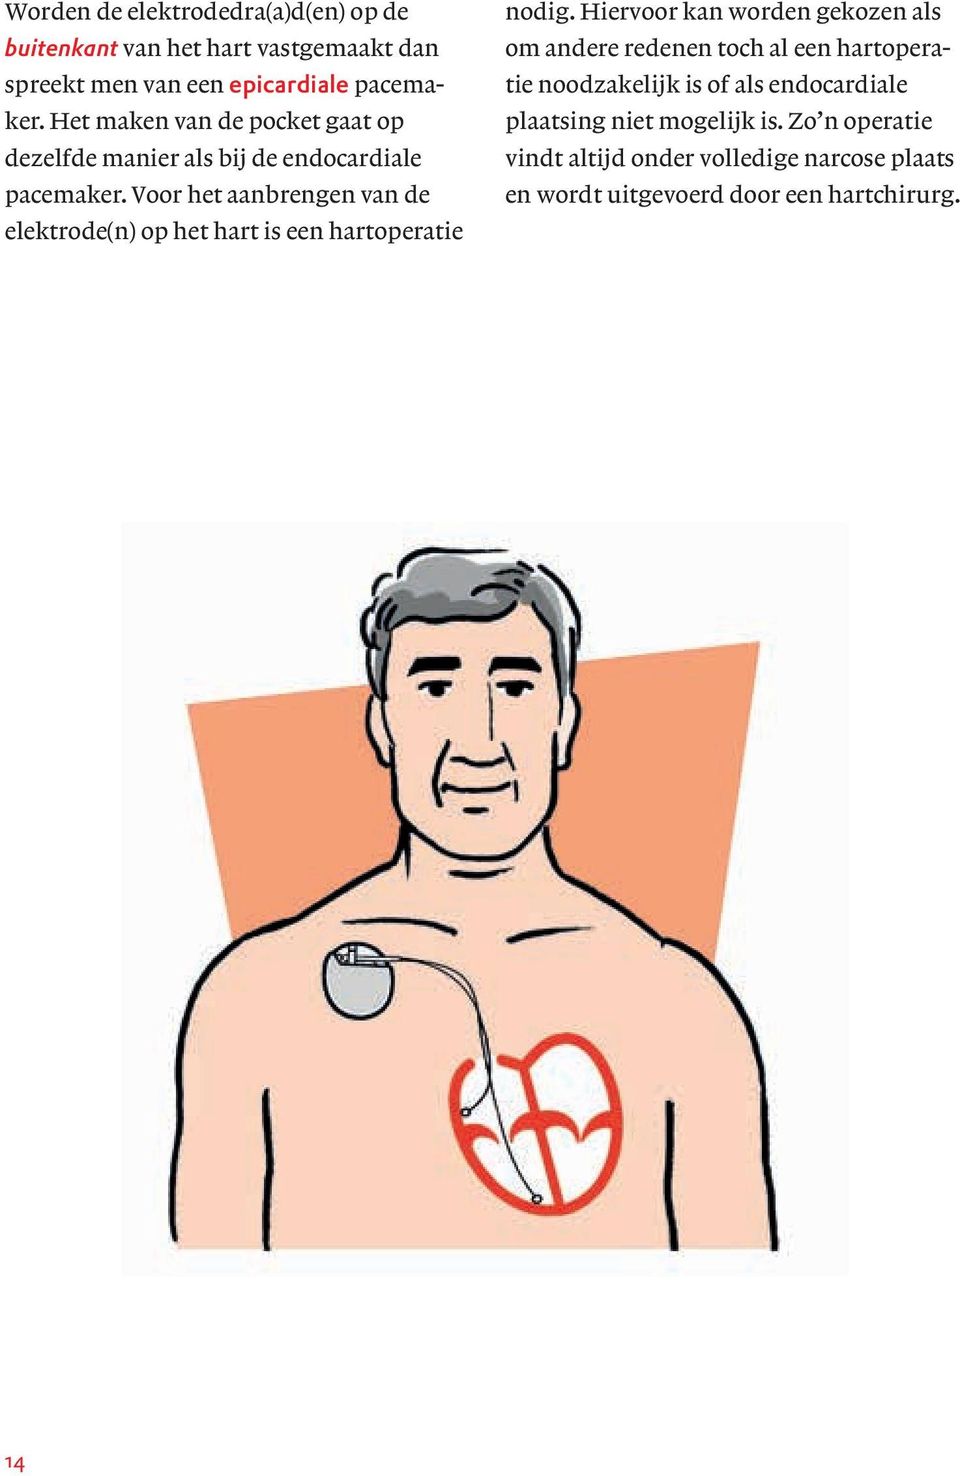 Voor het aanbrengen van de elektrode(n) op het hart is een hartoperatie nodig.